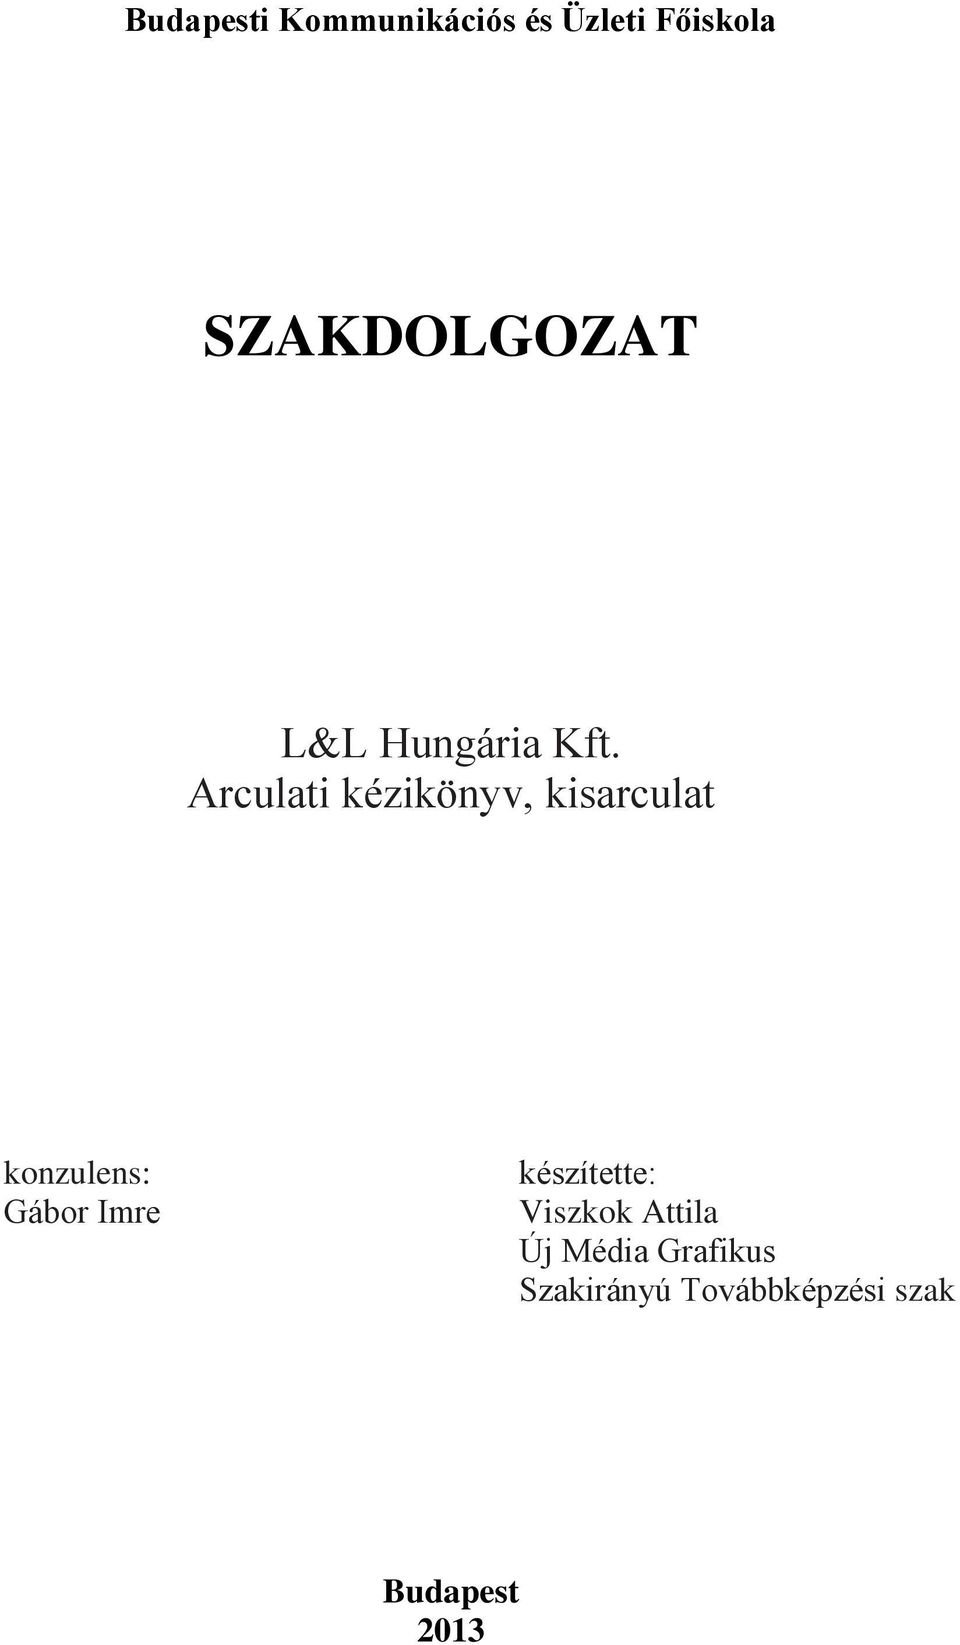 Arculati kézikönyv, kisarculat konzulens: Gábor Imre